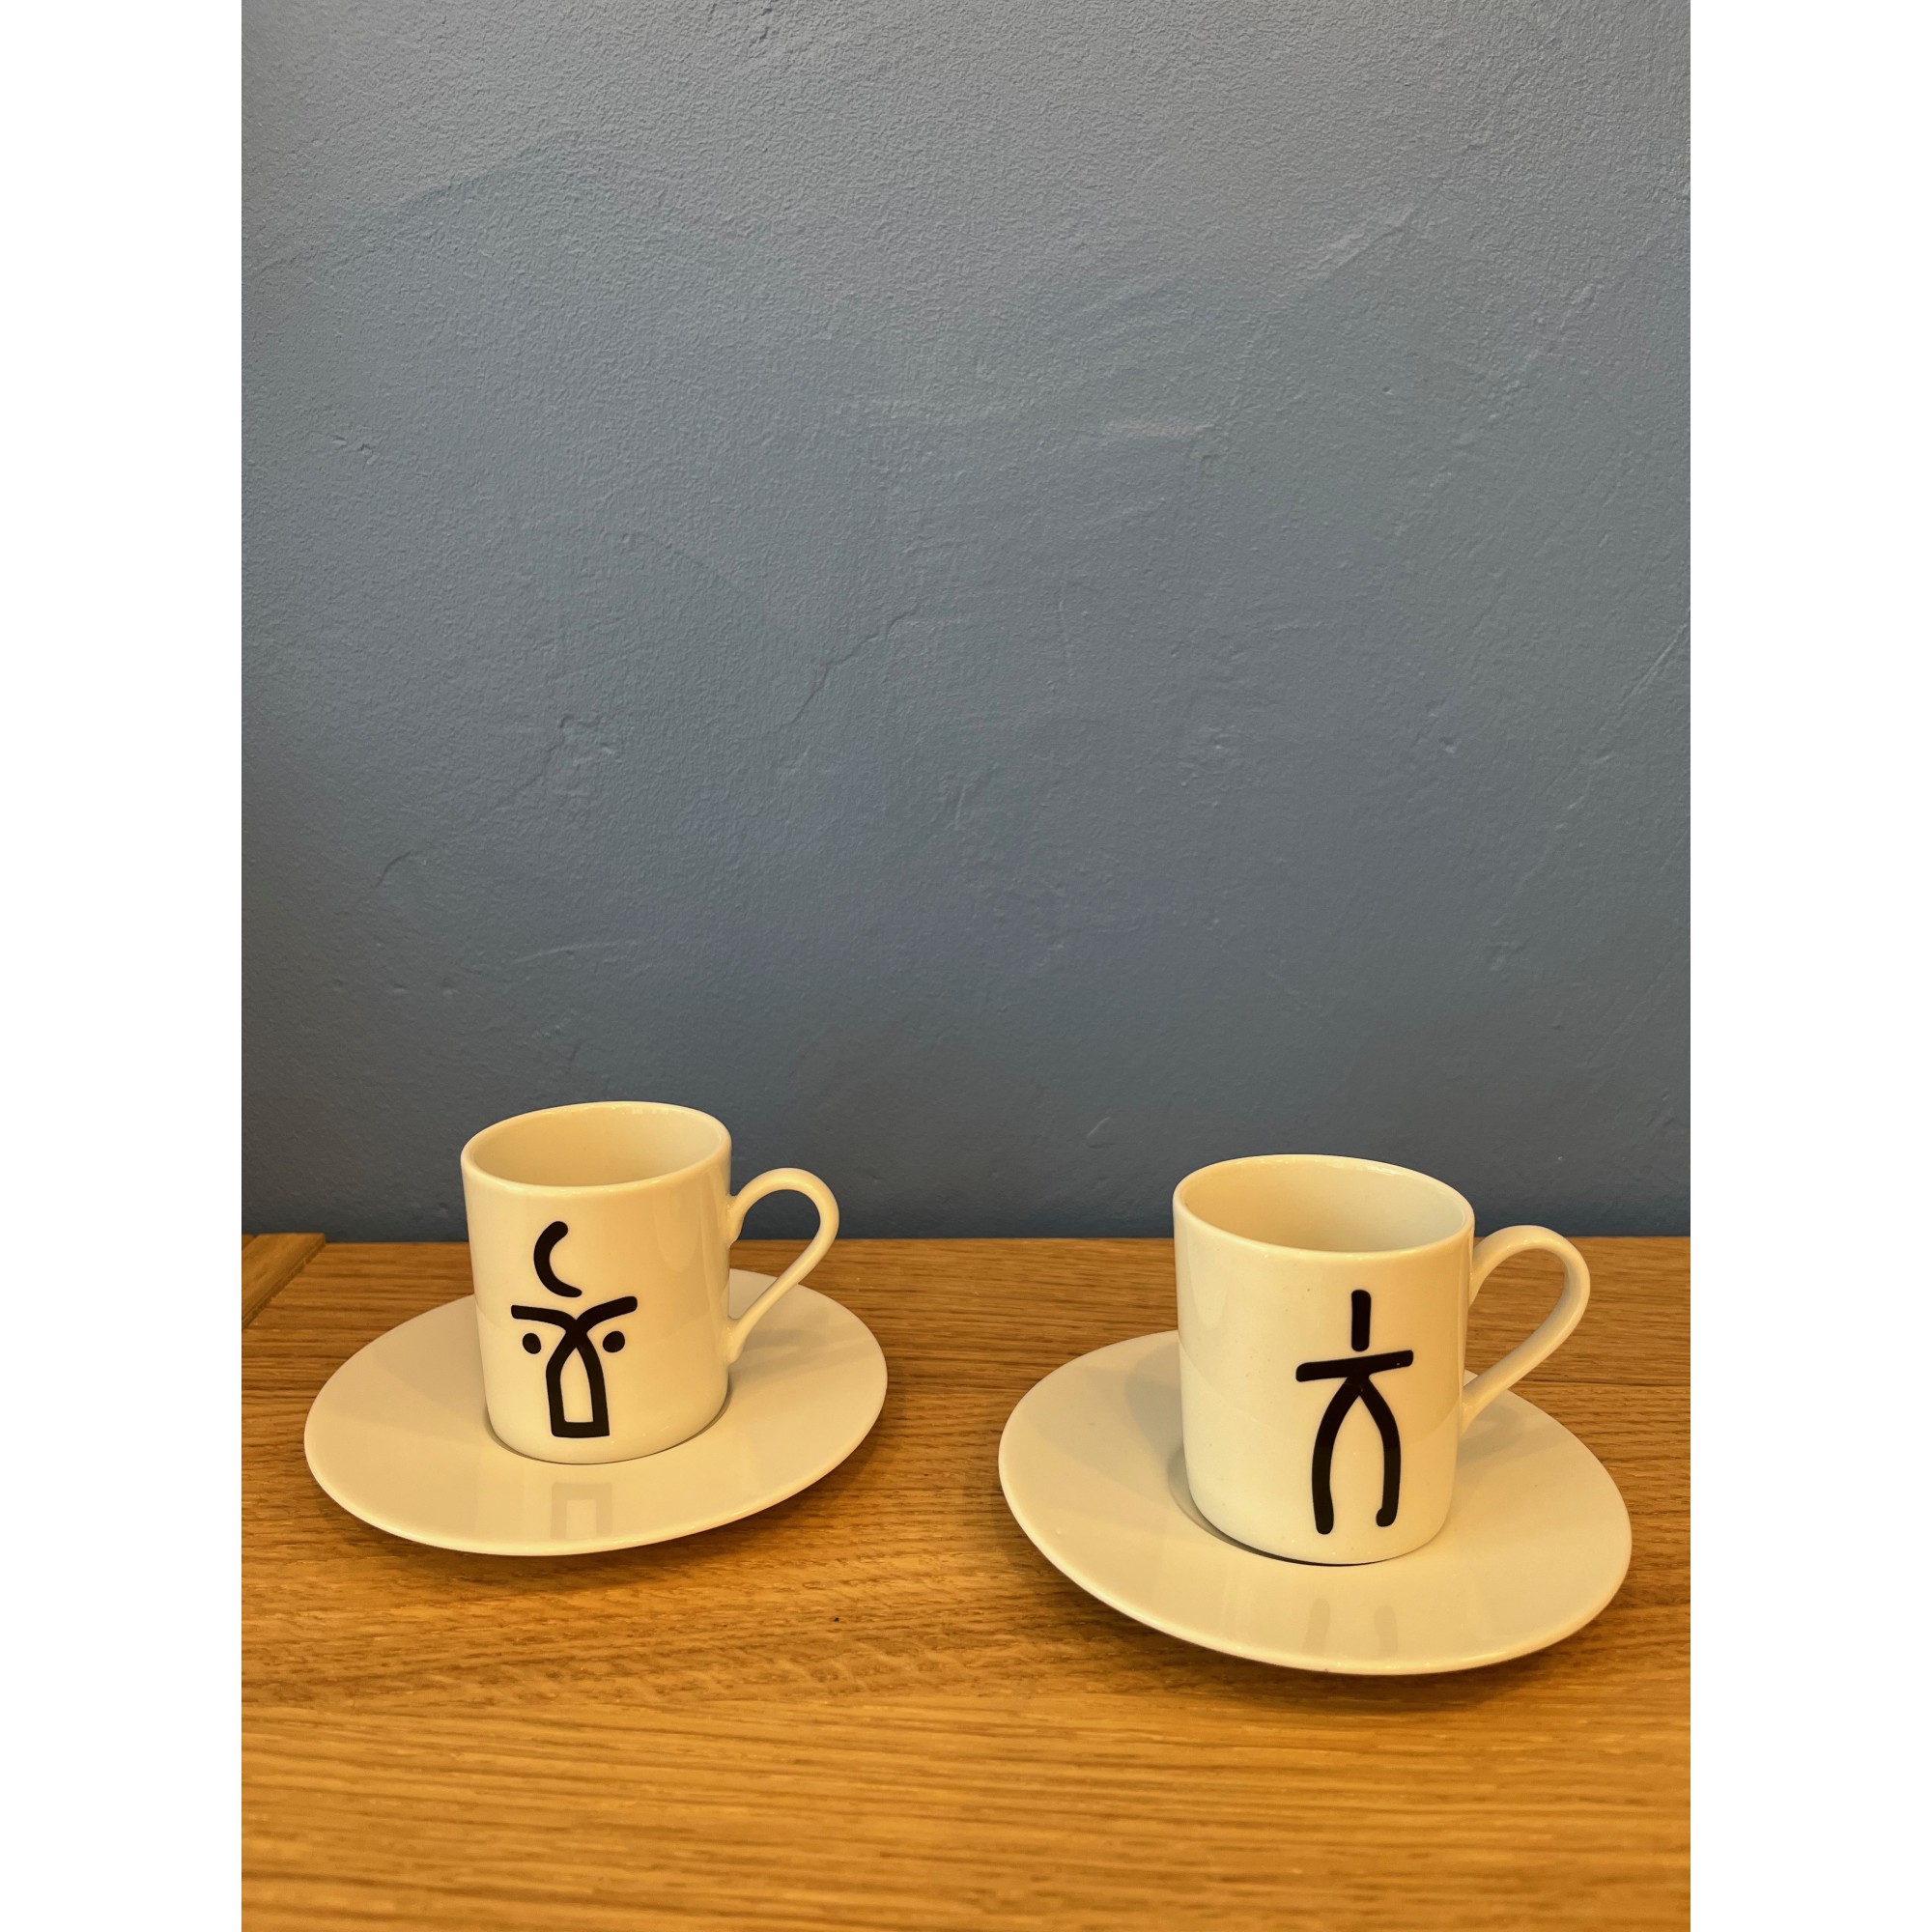 https://www.poupadou.com/2336-big_retina/porcelain-espresso-cup-and-plate.jpg